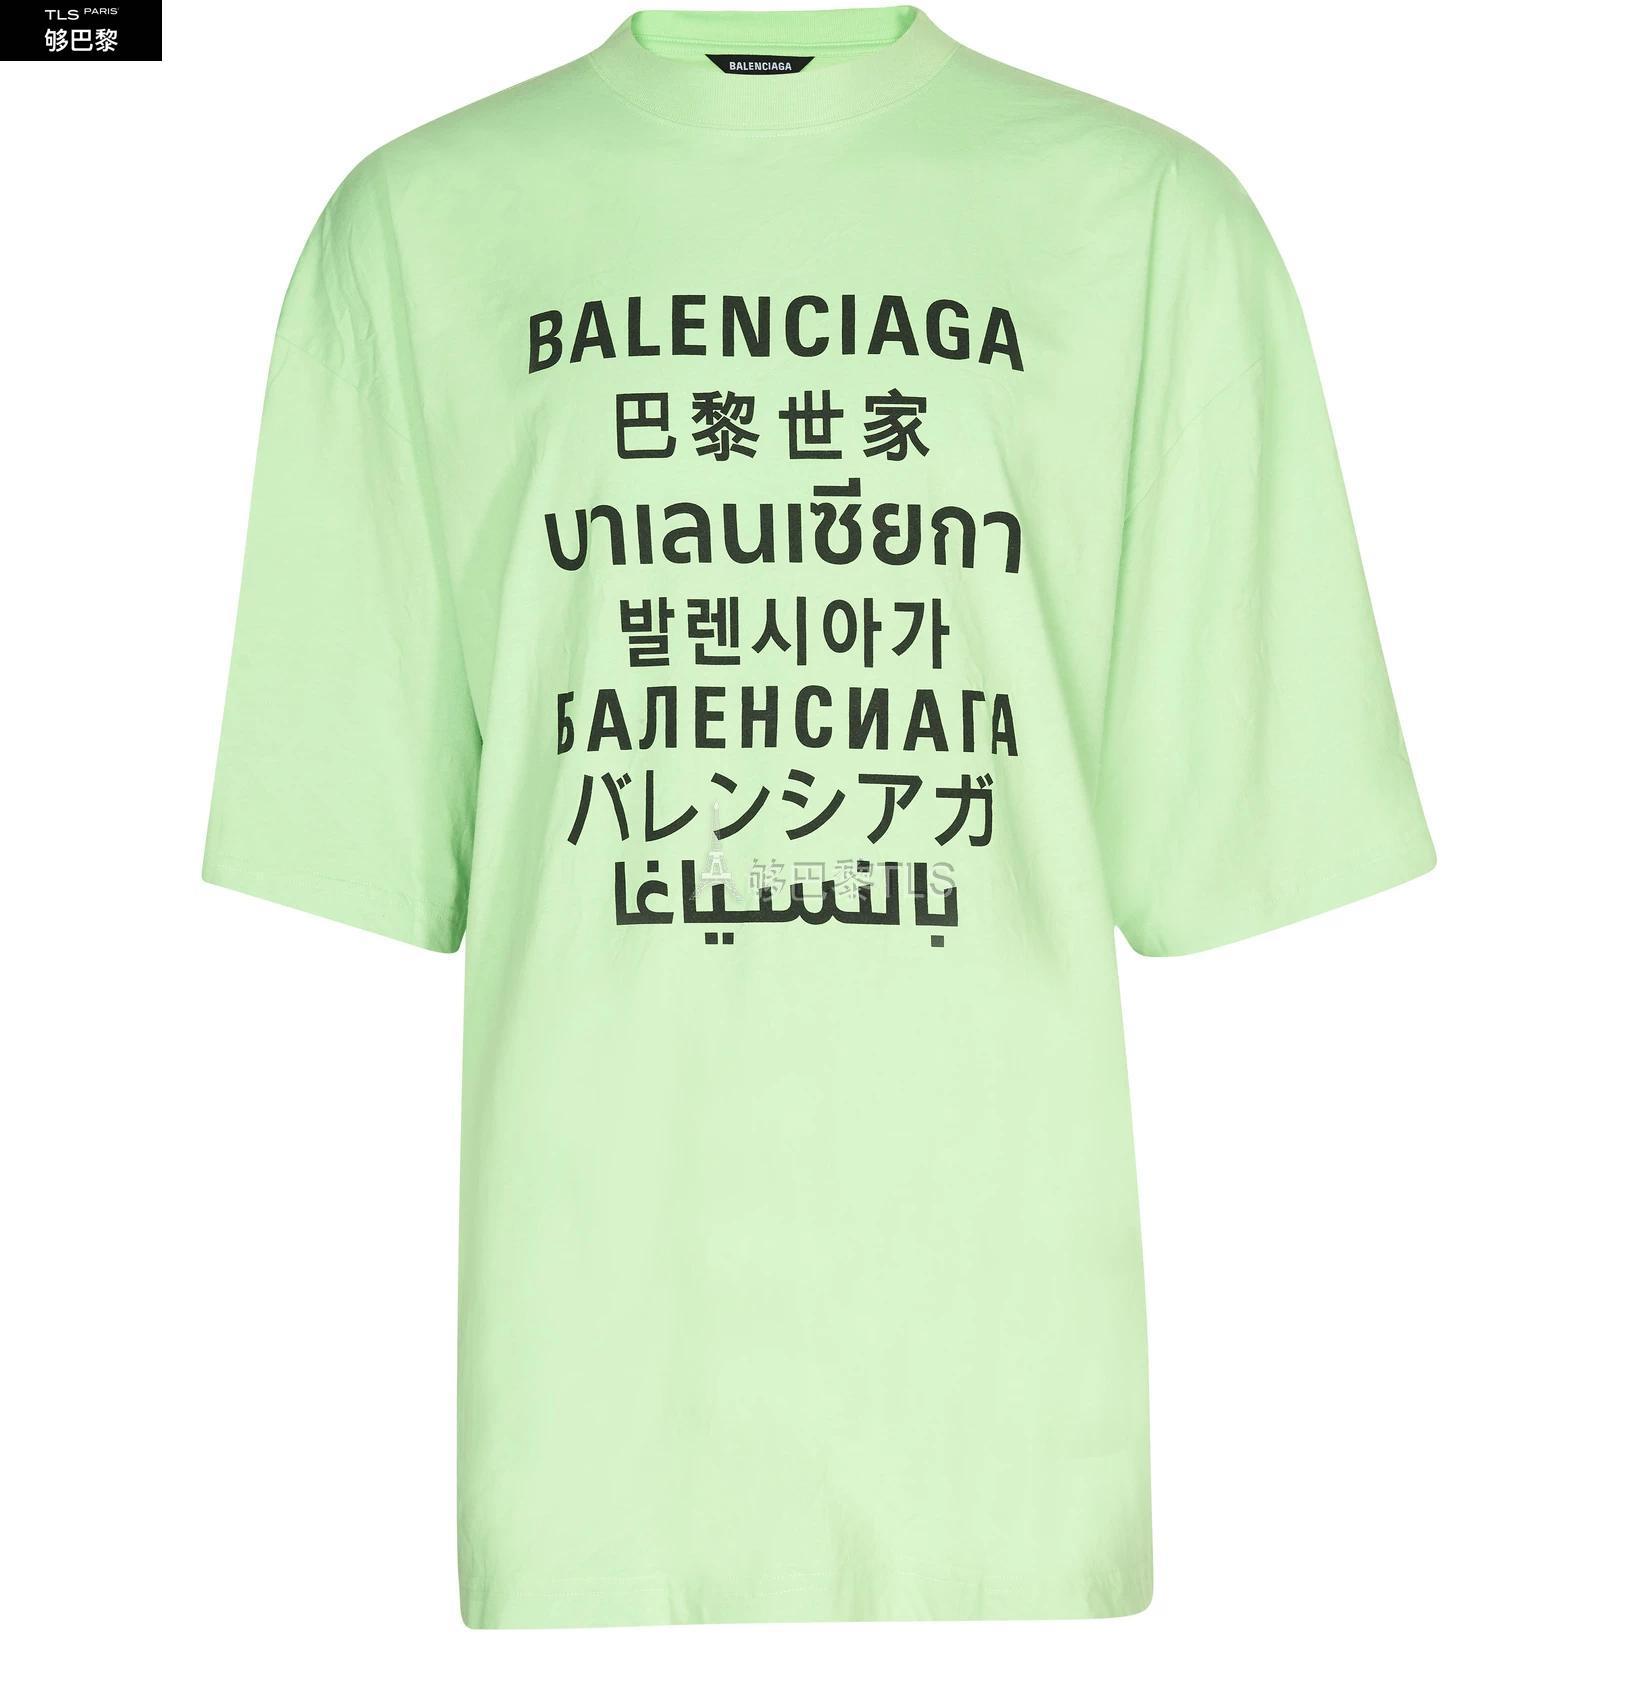 【包邮包税】 BALENCIAGA巴黎世家 21年春夏 男士 短袖T恤 XL号T恤 BAL3NFNCGEE 预定商品1-3周发货